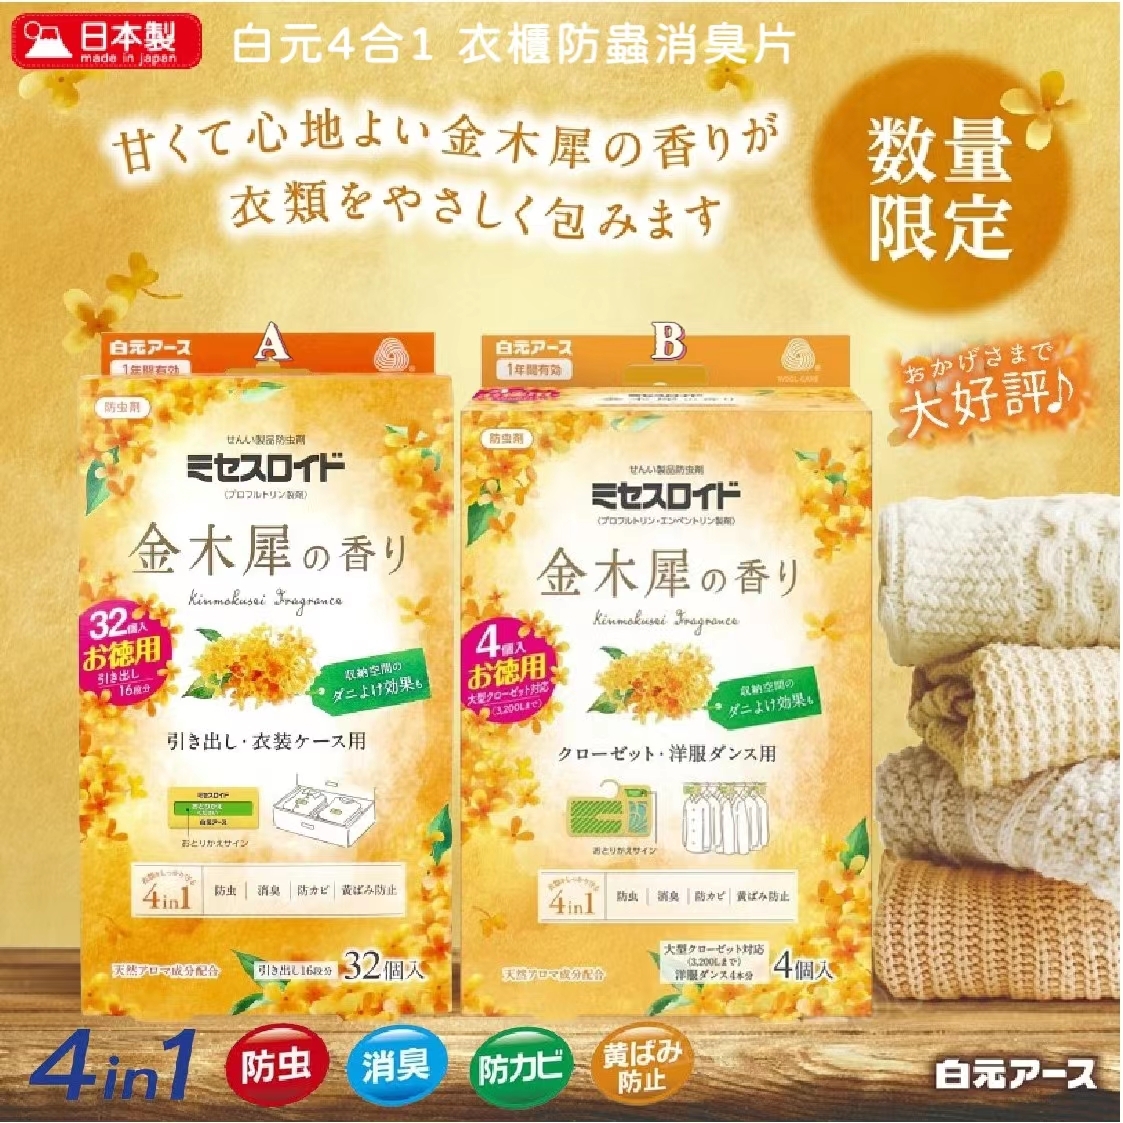 日本製白元4合1 衣櫃防蟲消臭片- 金木犀香味240413 (5月中旬到貨)